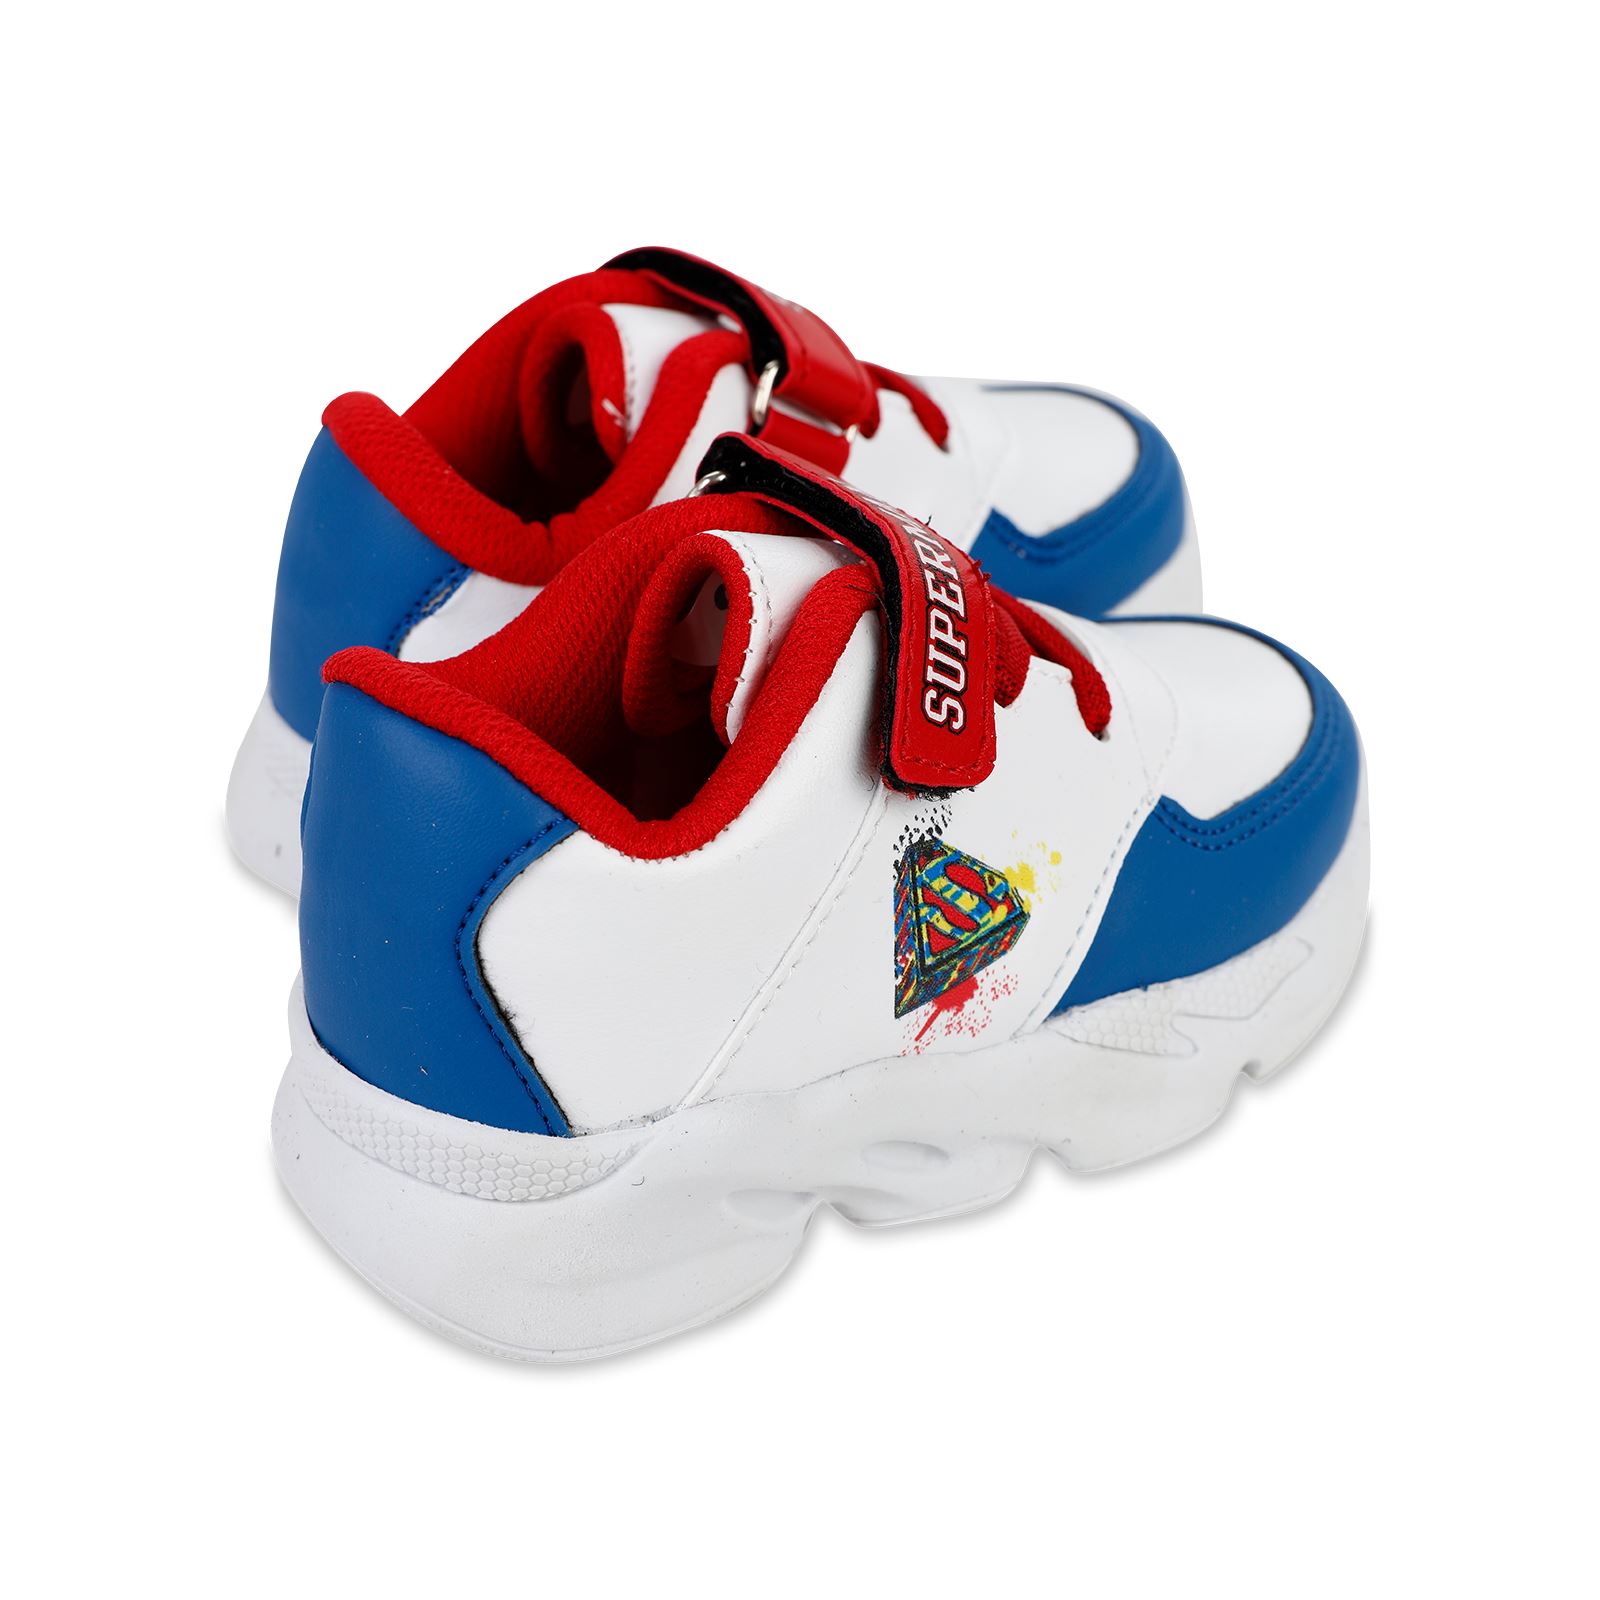 Superman Erkek Çocuk Spor Ayakkabı 22-25 Numara Beyaz